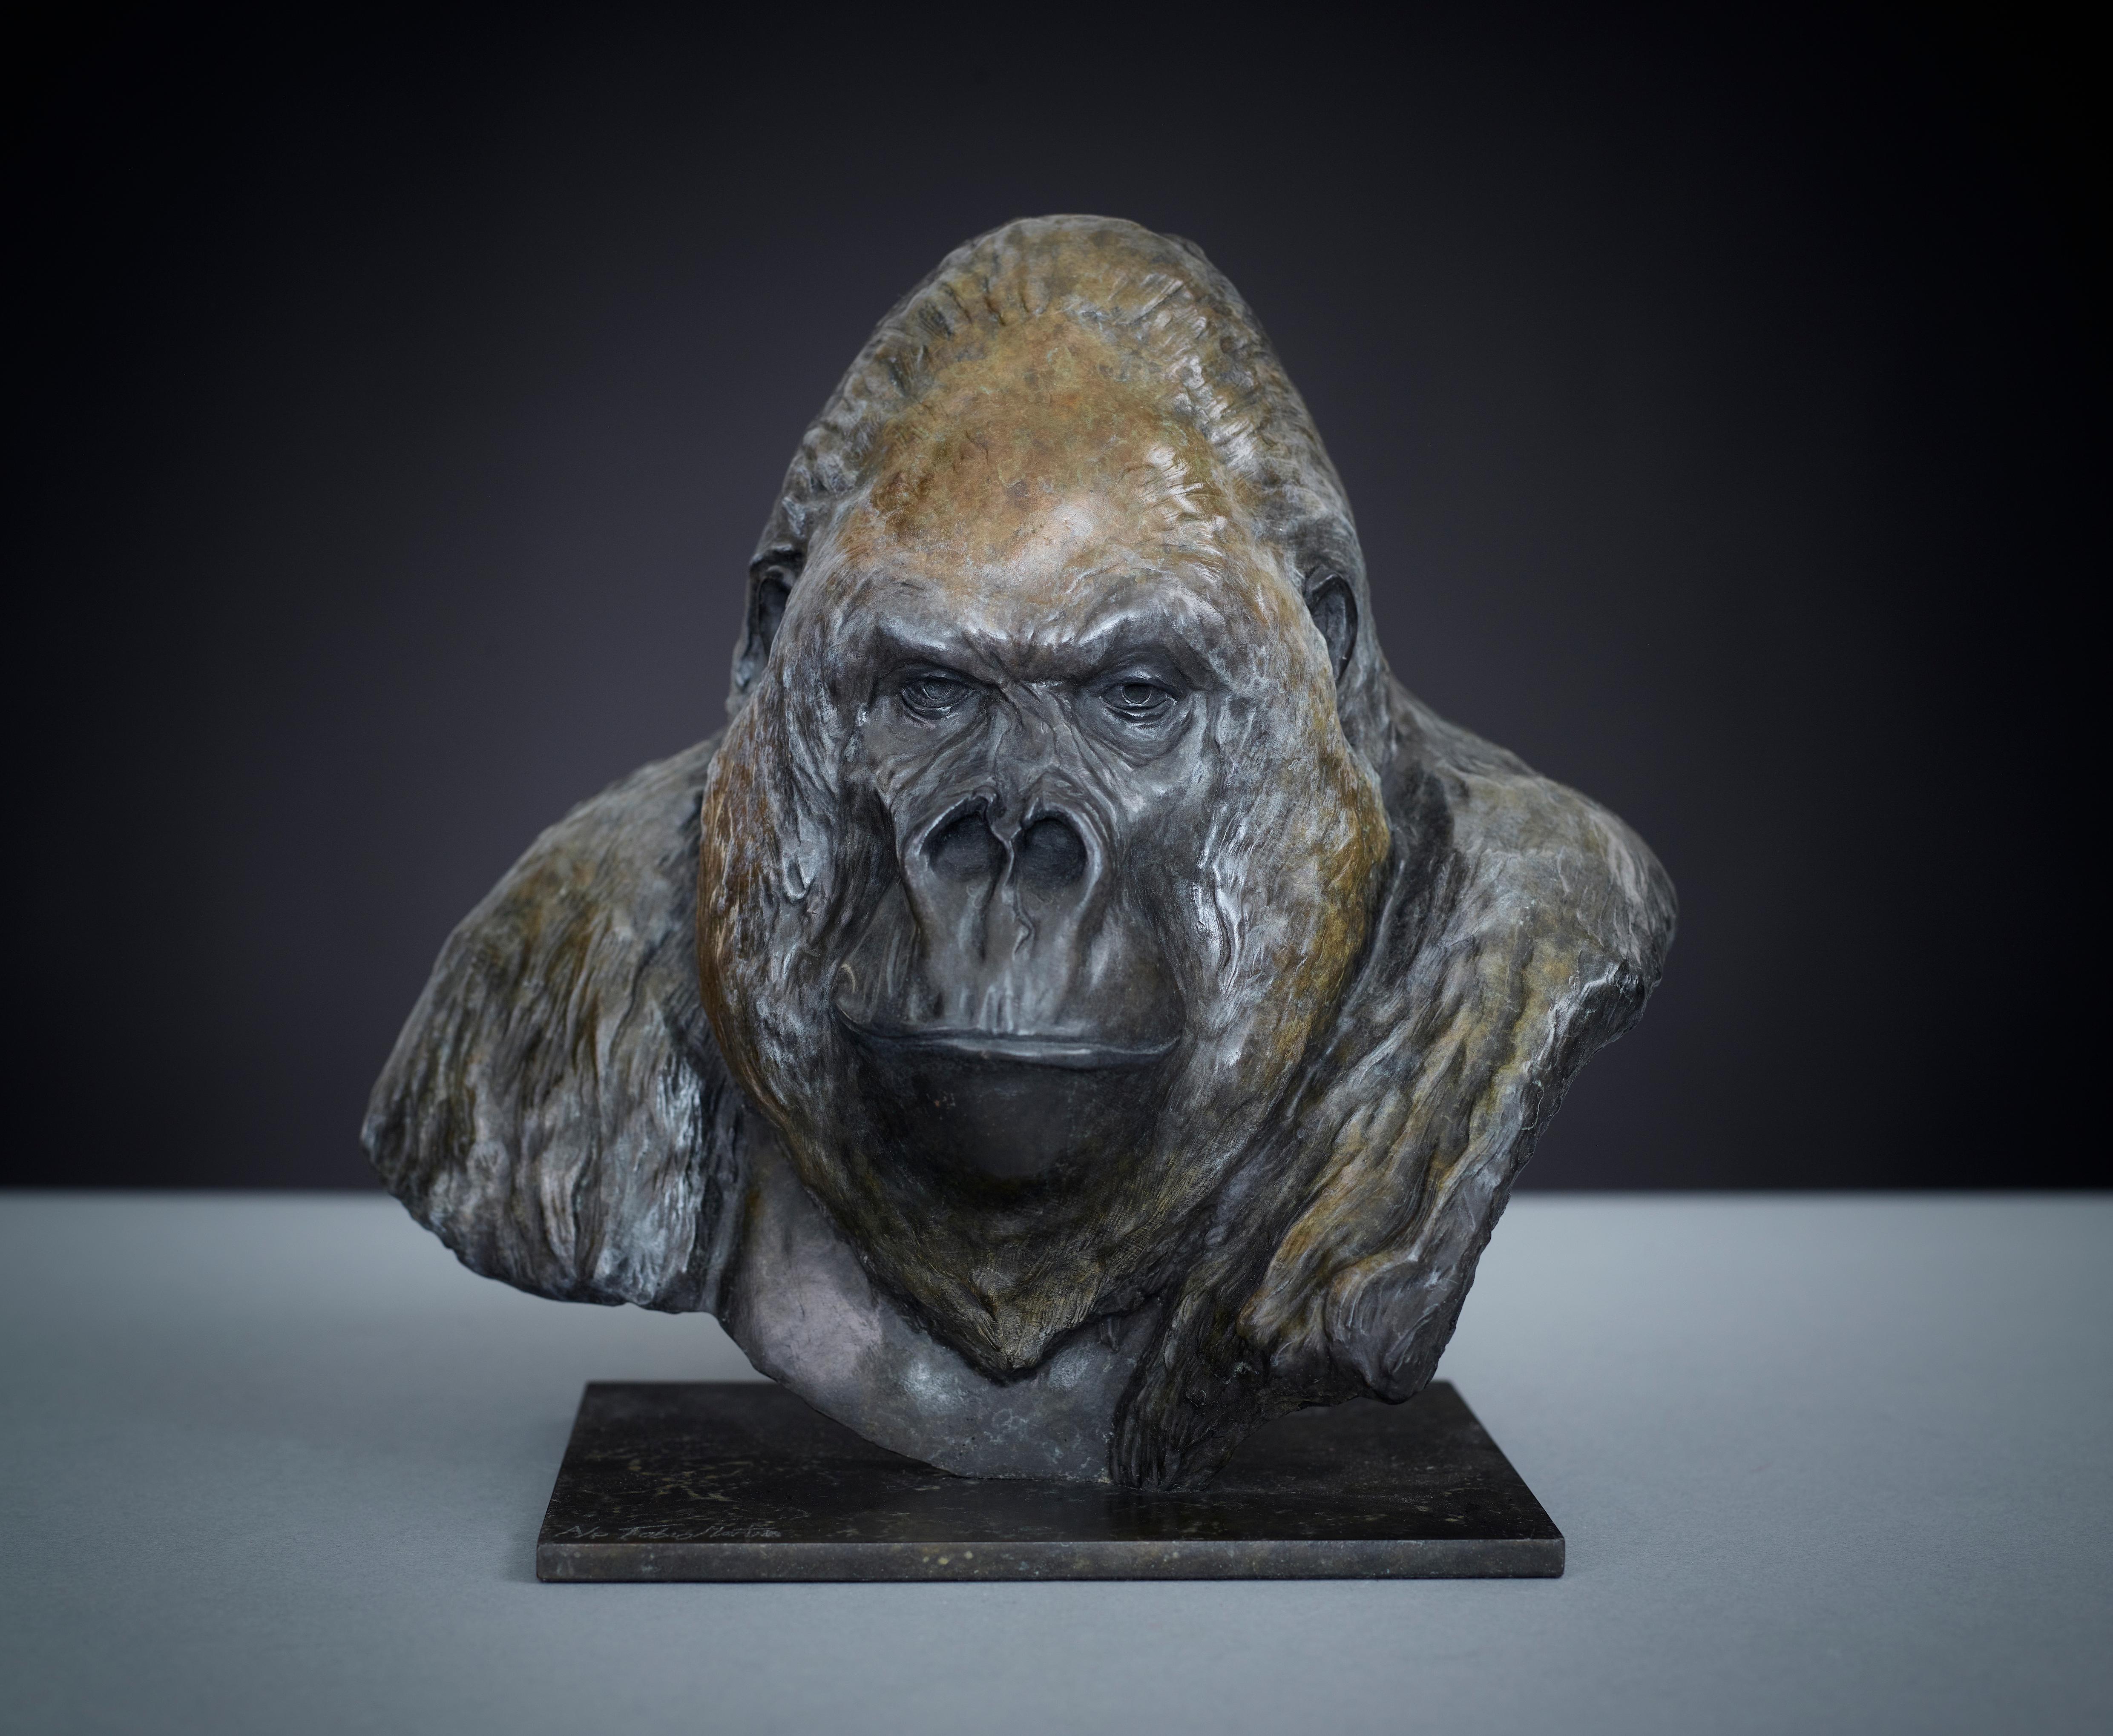 nico Jnr' de Tobias Martin est une sculpture animalière en bronze massif. Basé sur le célèbre gorille "Nico", qui était le plus grand et le plus ancien des gorilles à dos argenté gardés en captivité. 

Tobias Martin est né en 1972 dans le Wiltshire,